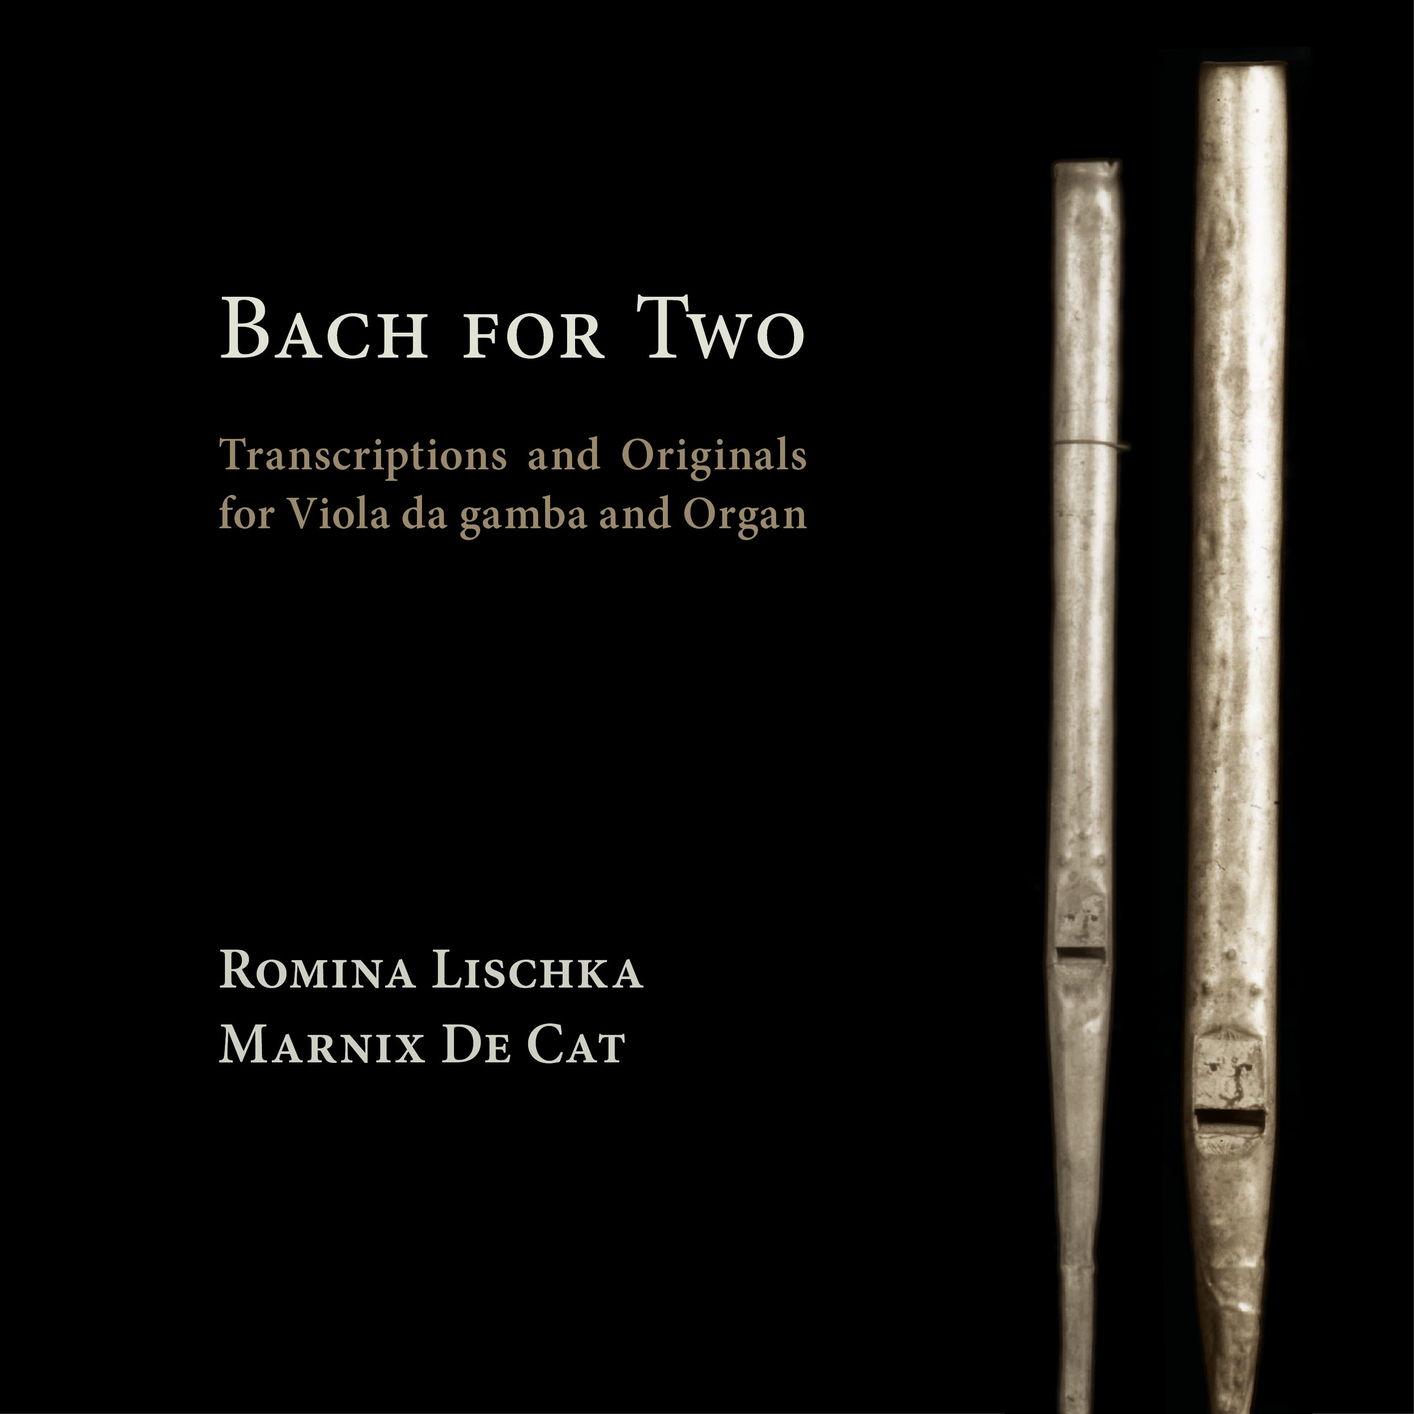 Romina Lischka & Marnix De Cat - Bach fot Two (2021) [FLAC 24bit/96kHz]